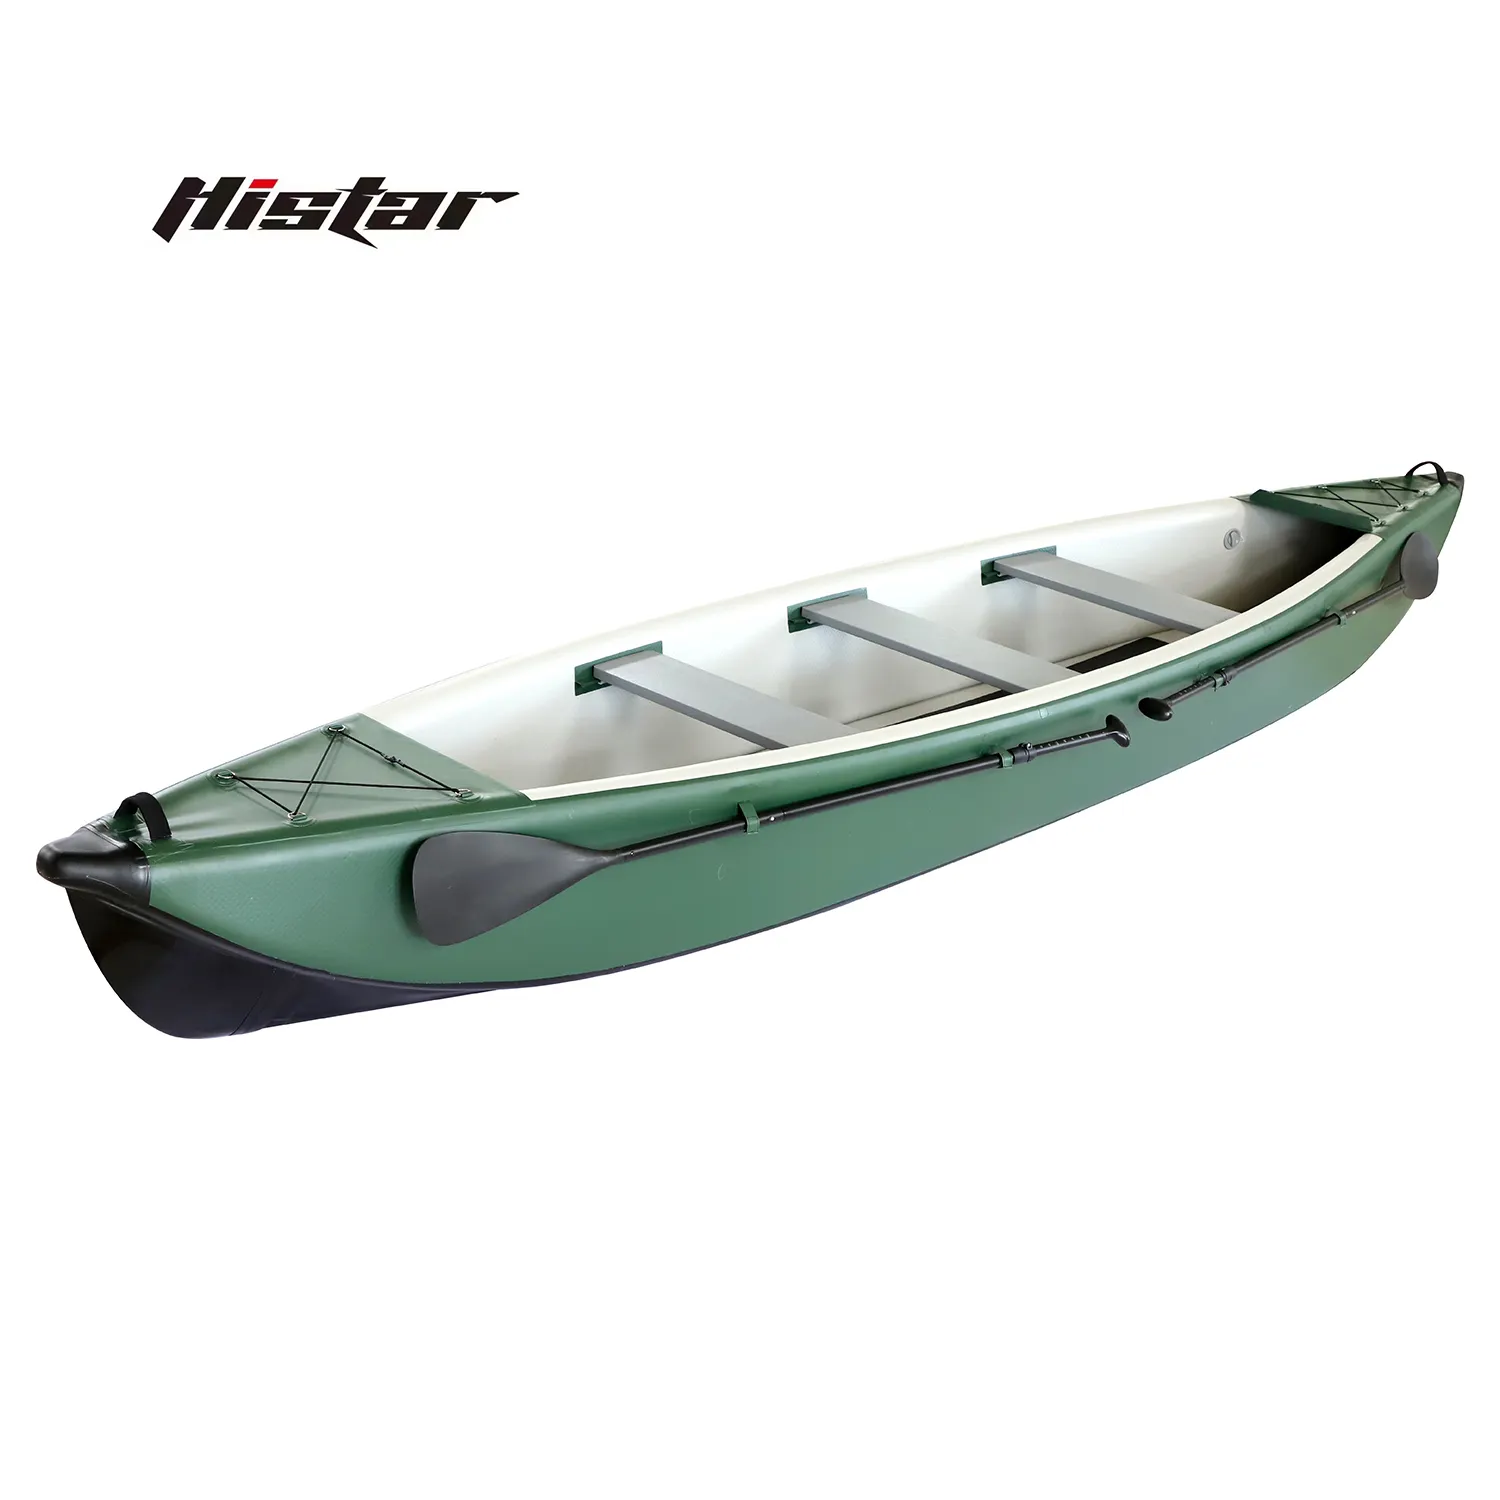 قارب هيستار مخصص 16 قدمًا و 3 مقاعد قارب التجديف غرزة قطرة كاملة قابل للنفخ قارب الصيد/قوارب الكاياك